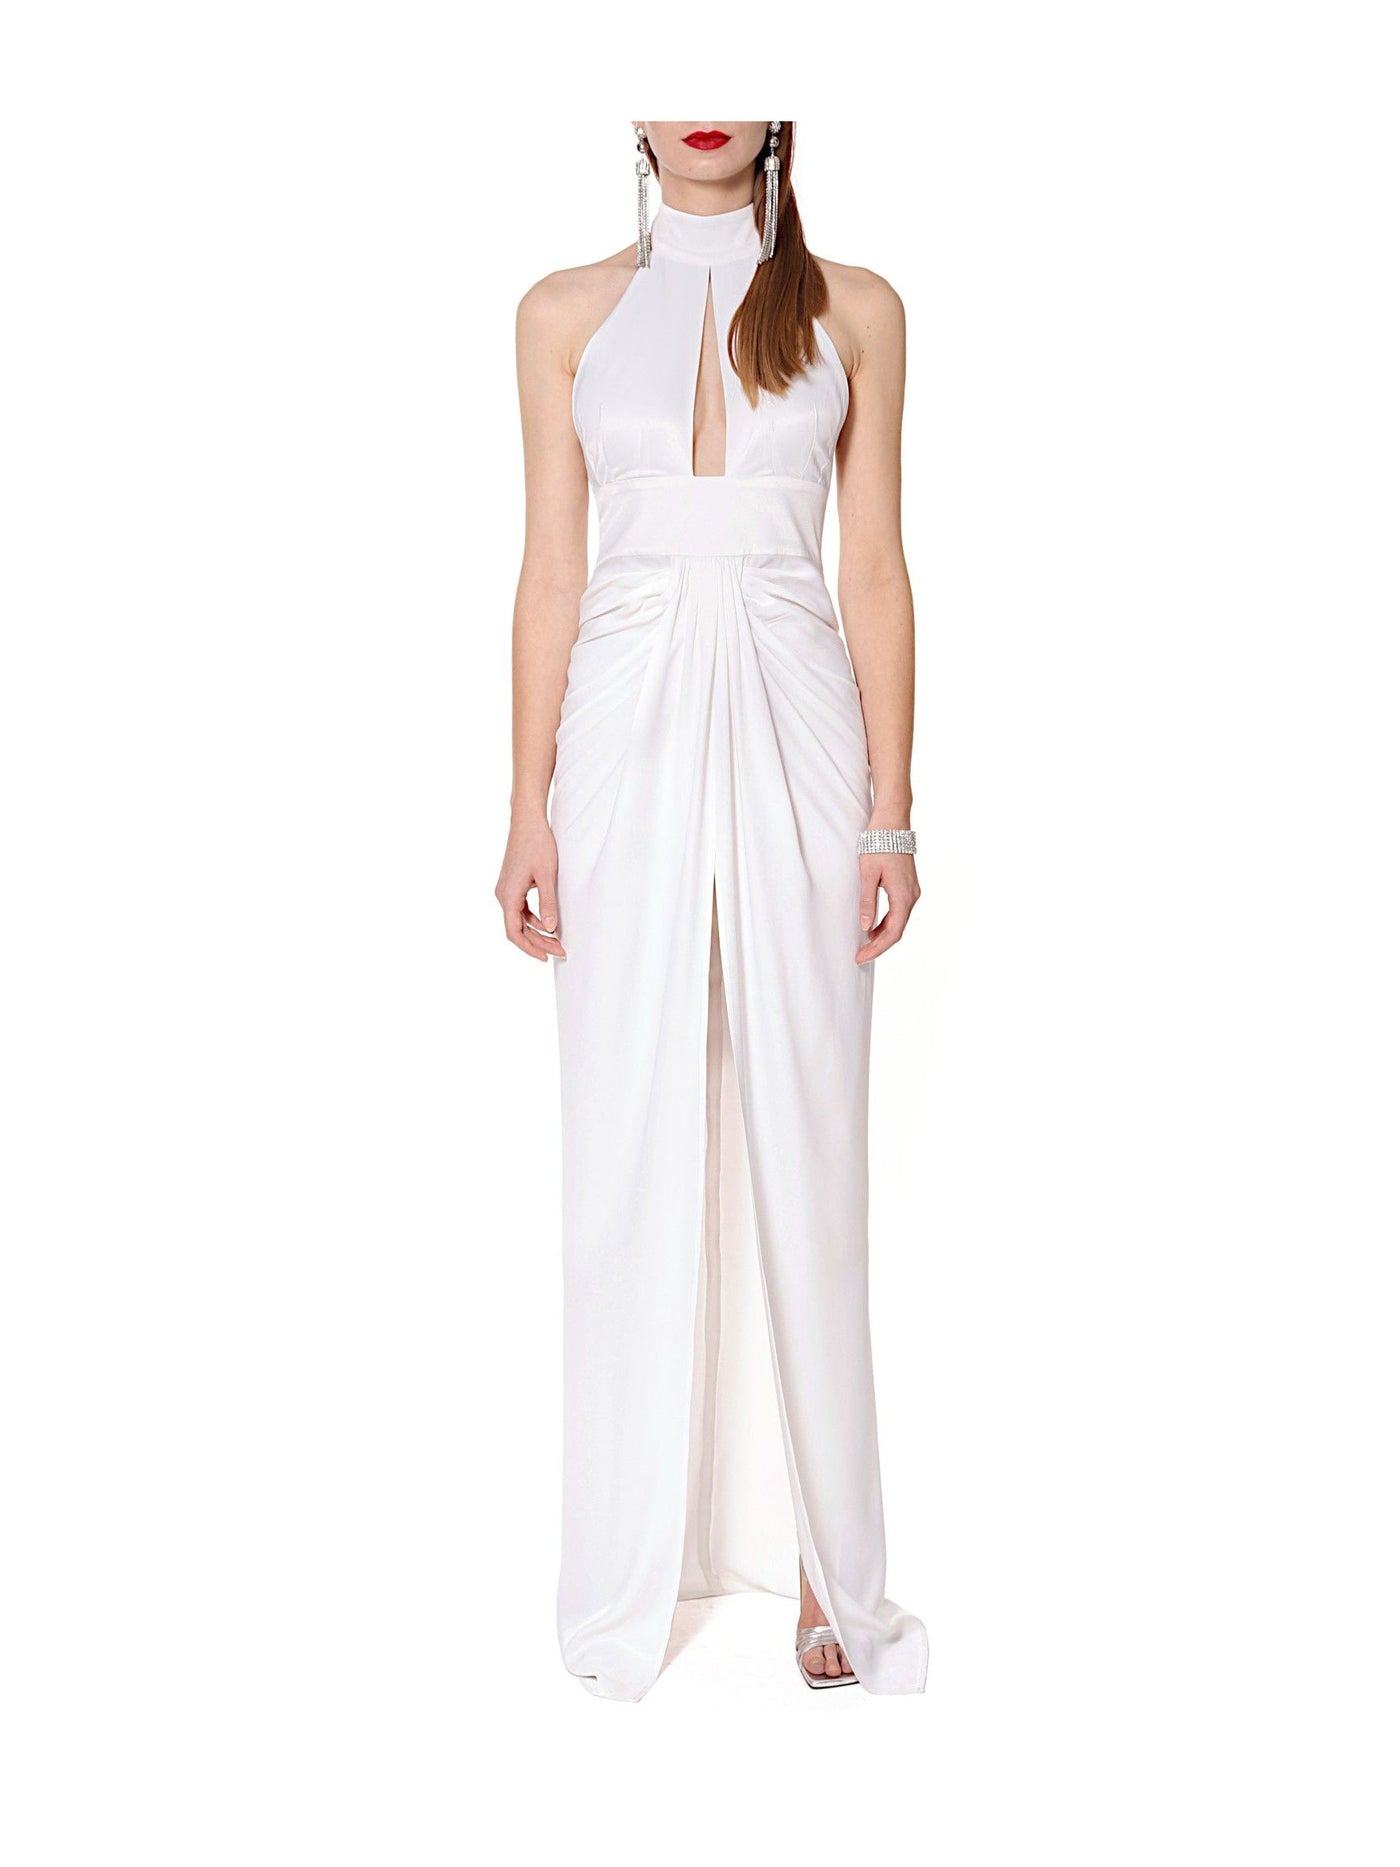 Giulia Bright White Dress